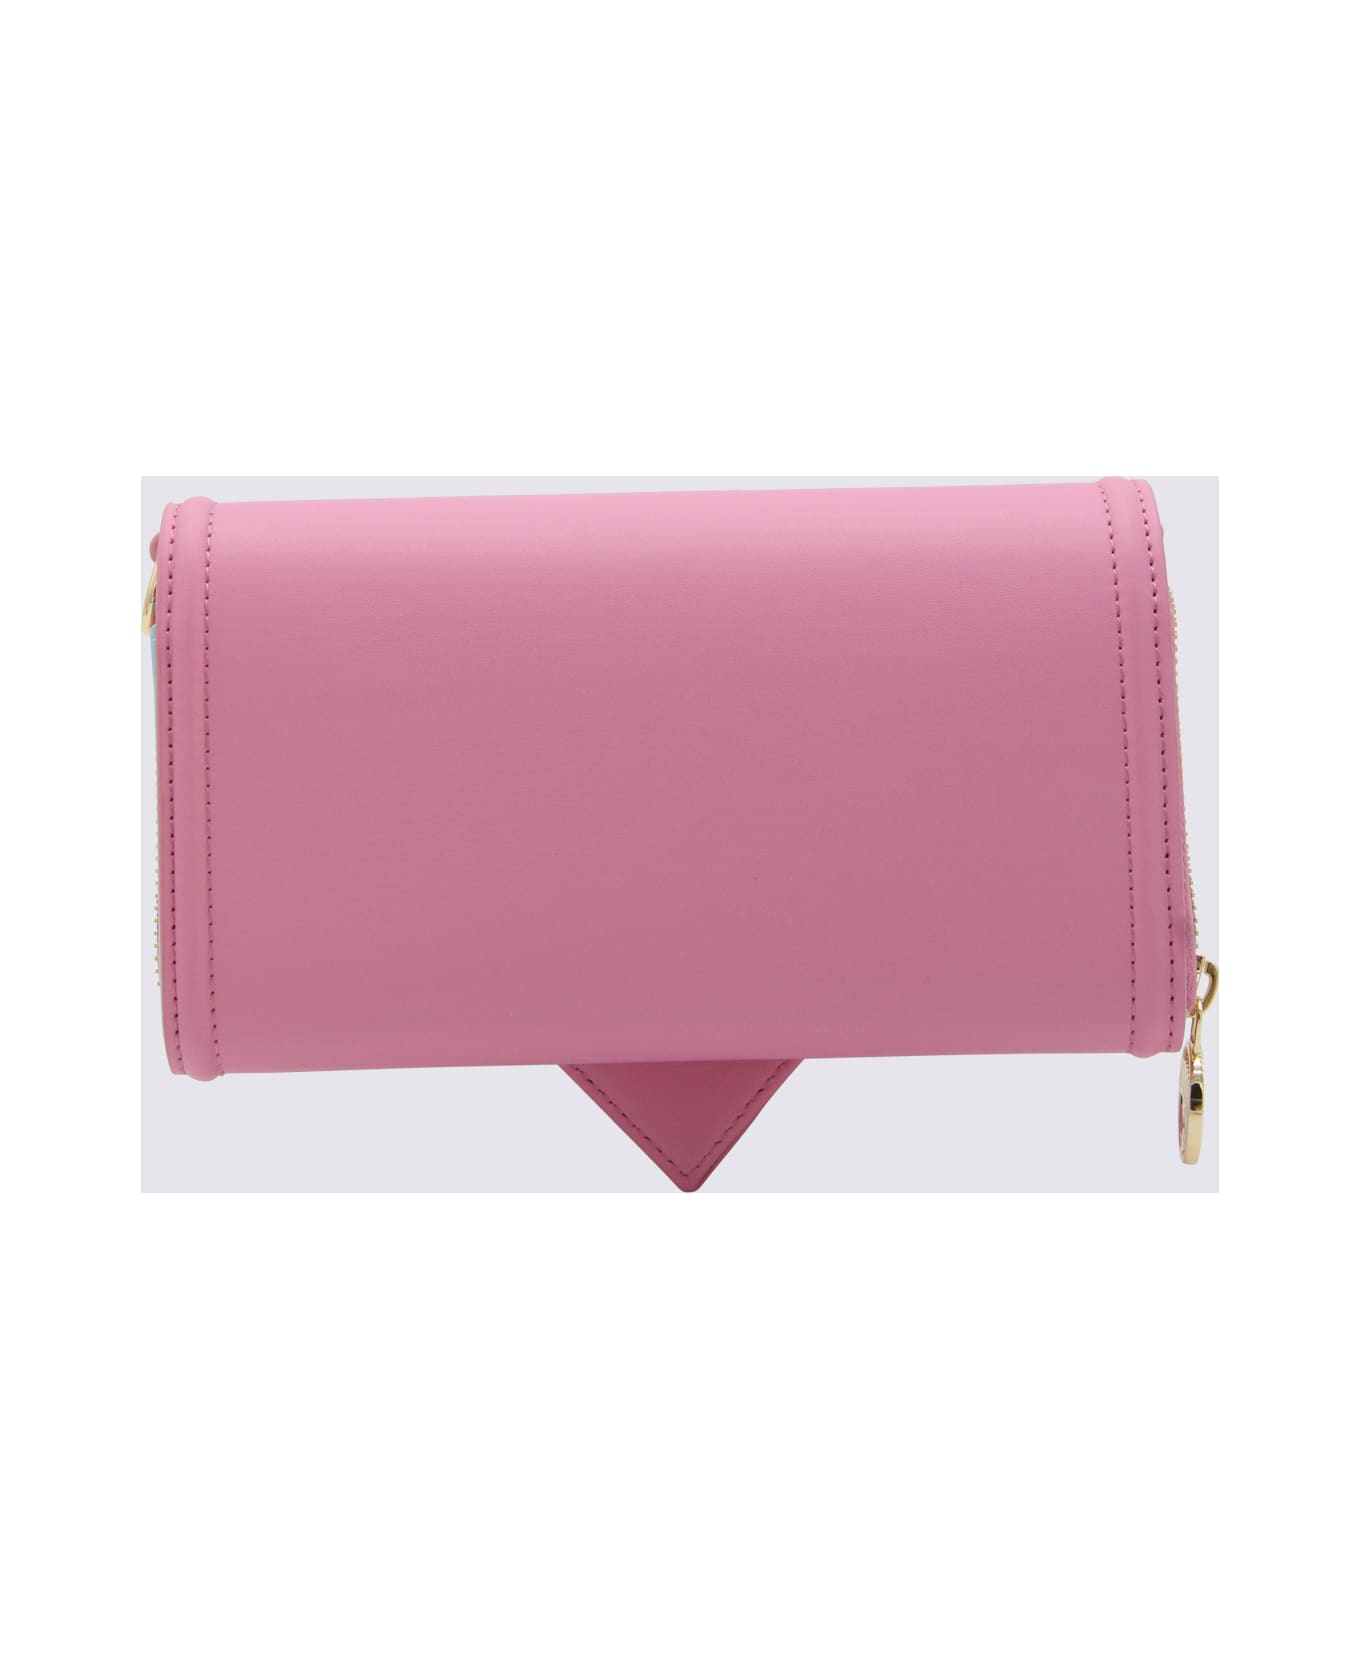 Chiara Ferragni Pink Crossbody Bag - Fuchsia